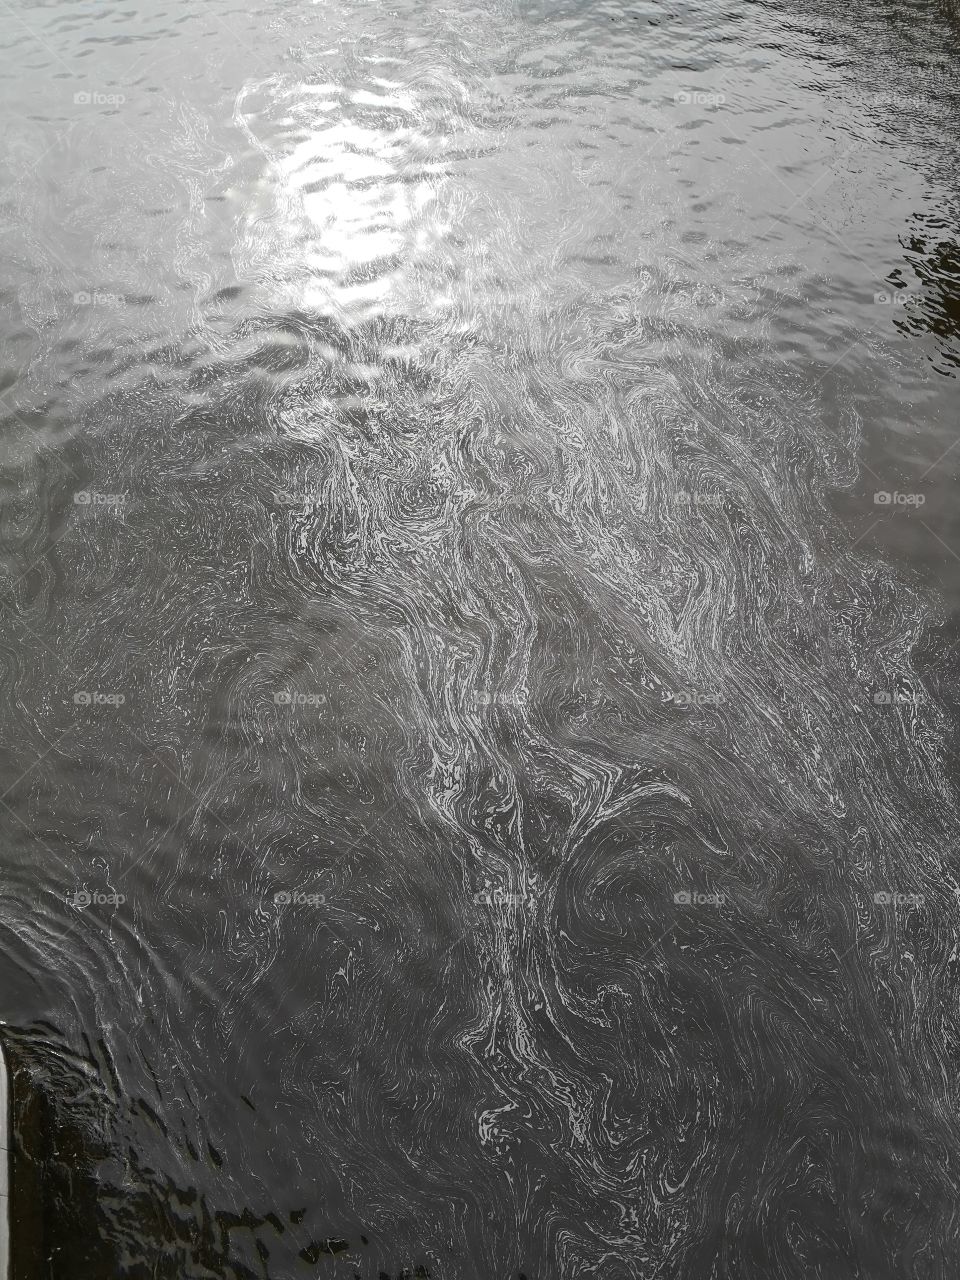 River texture